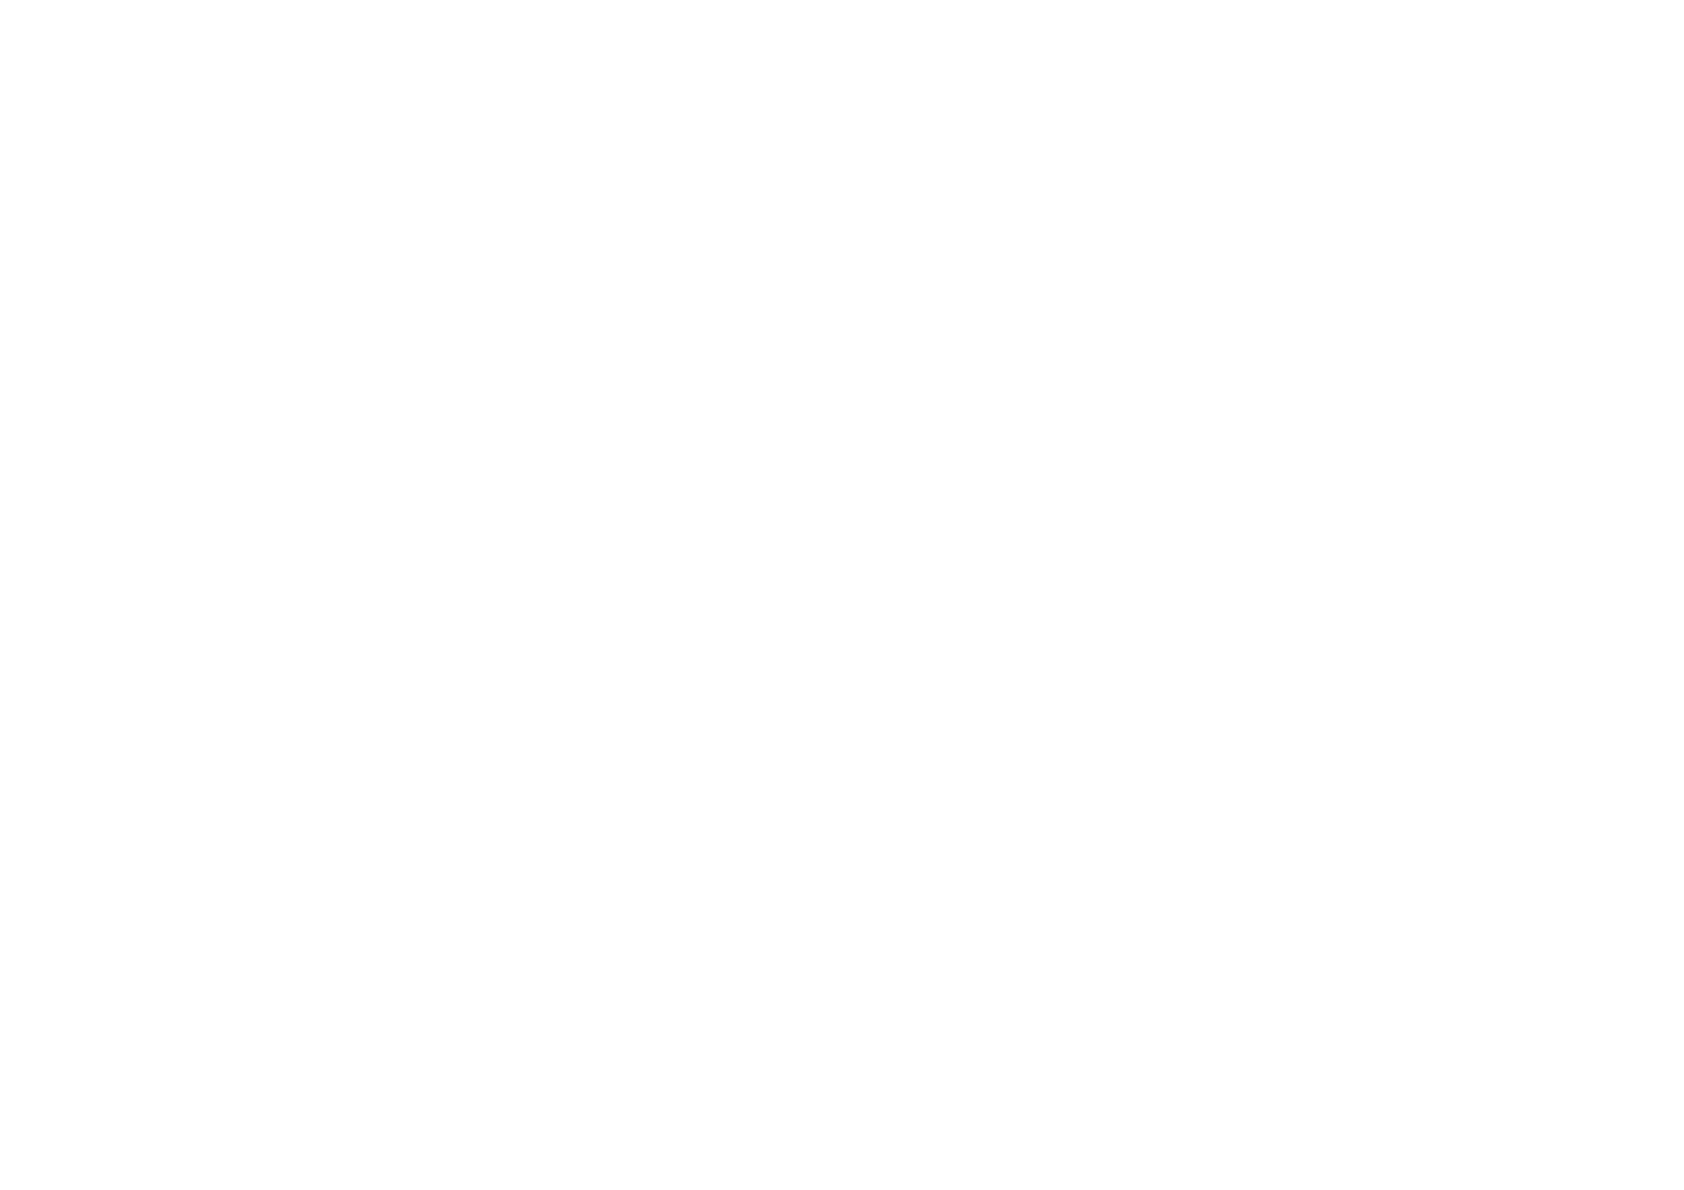 Afikra logo 05